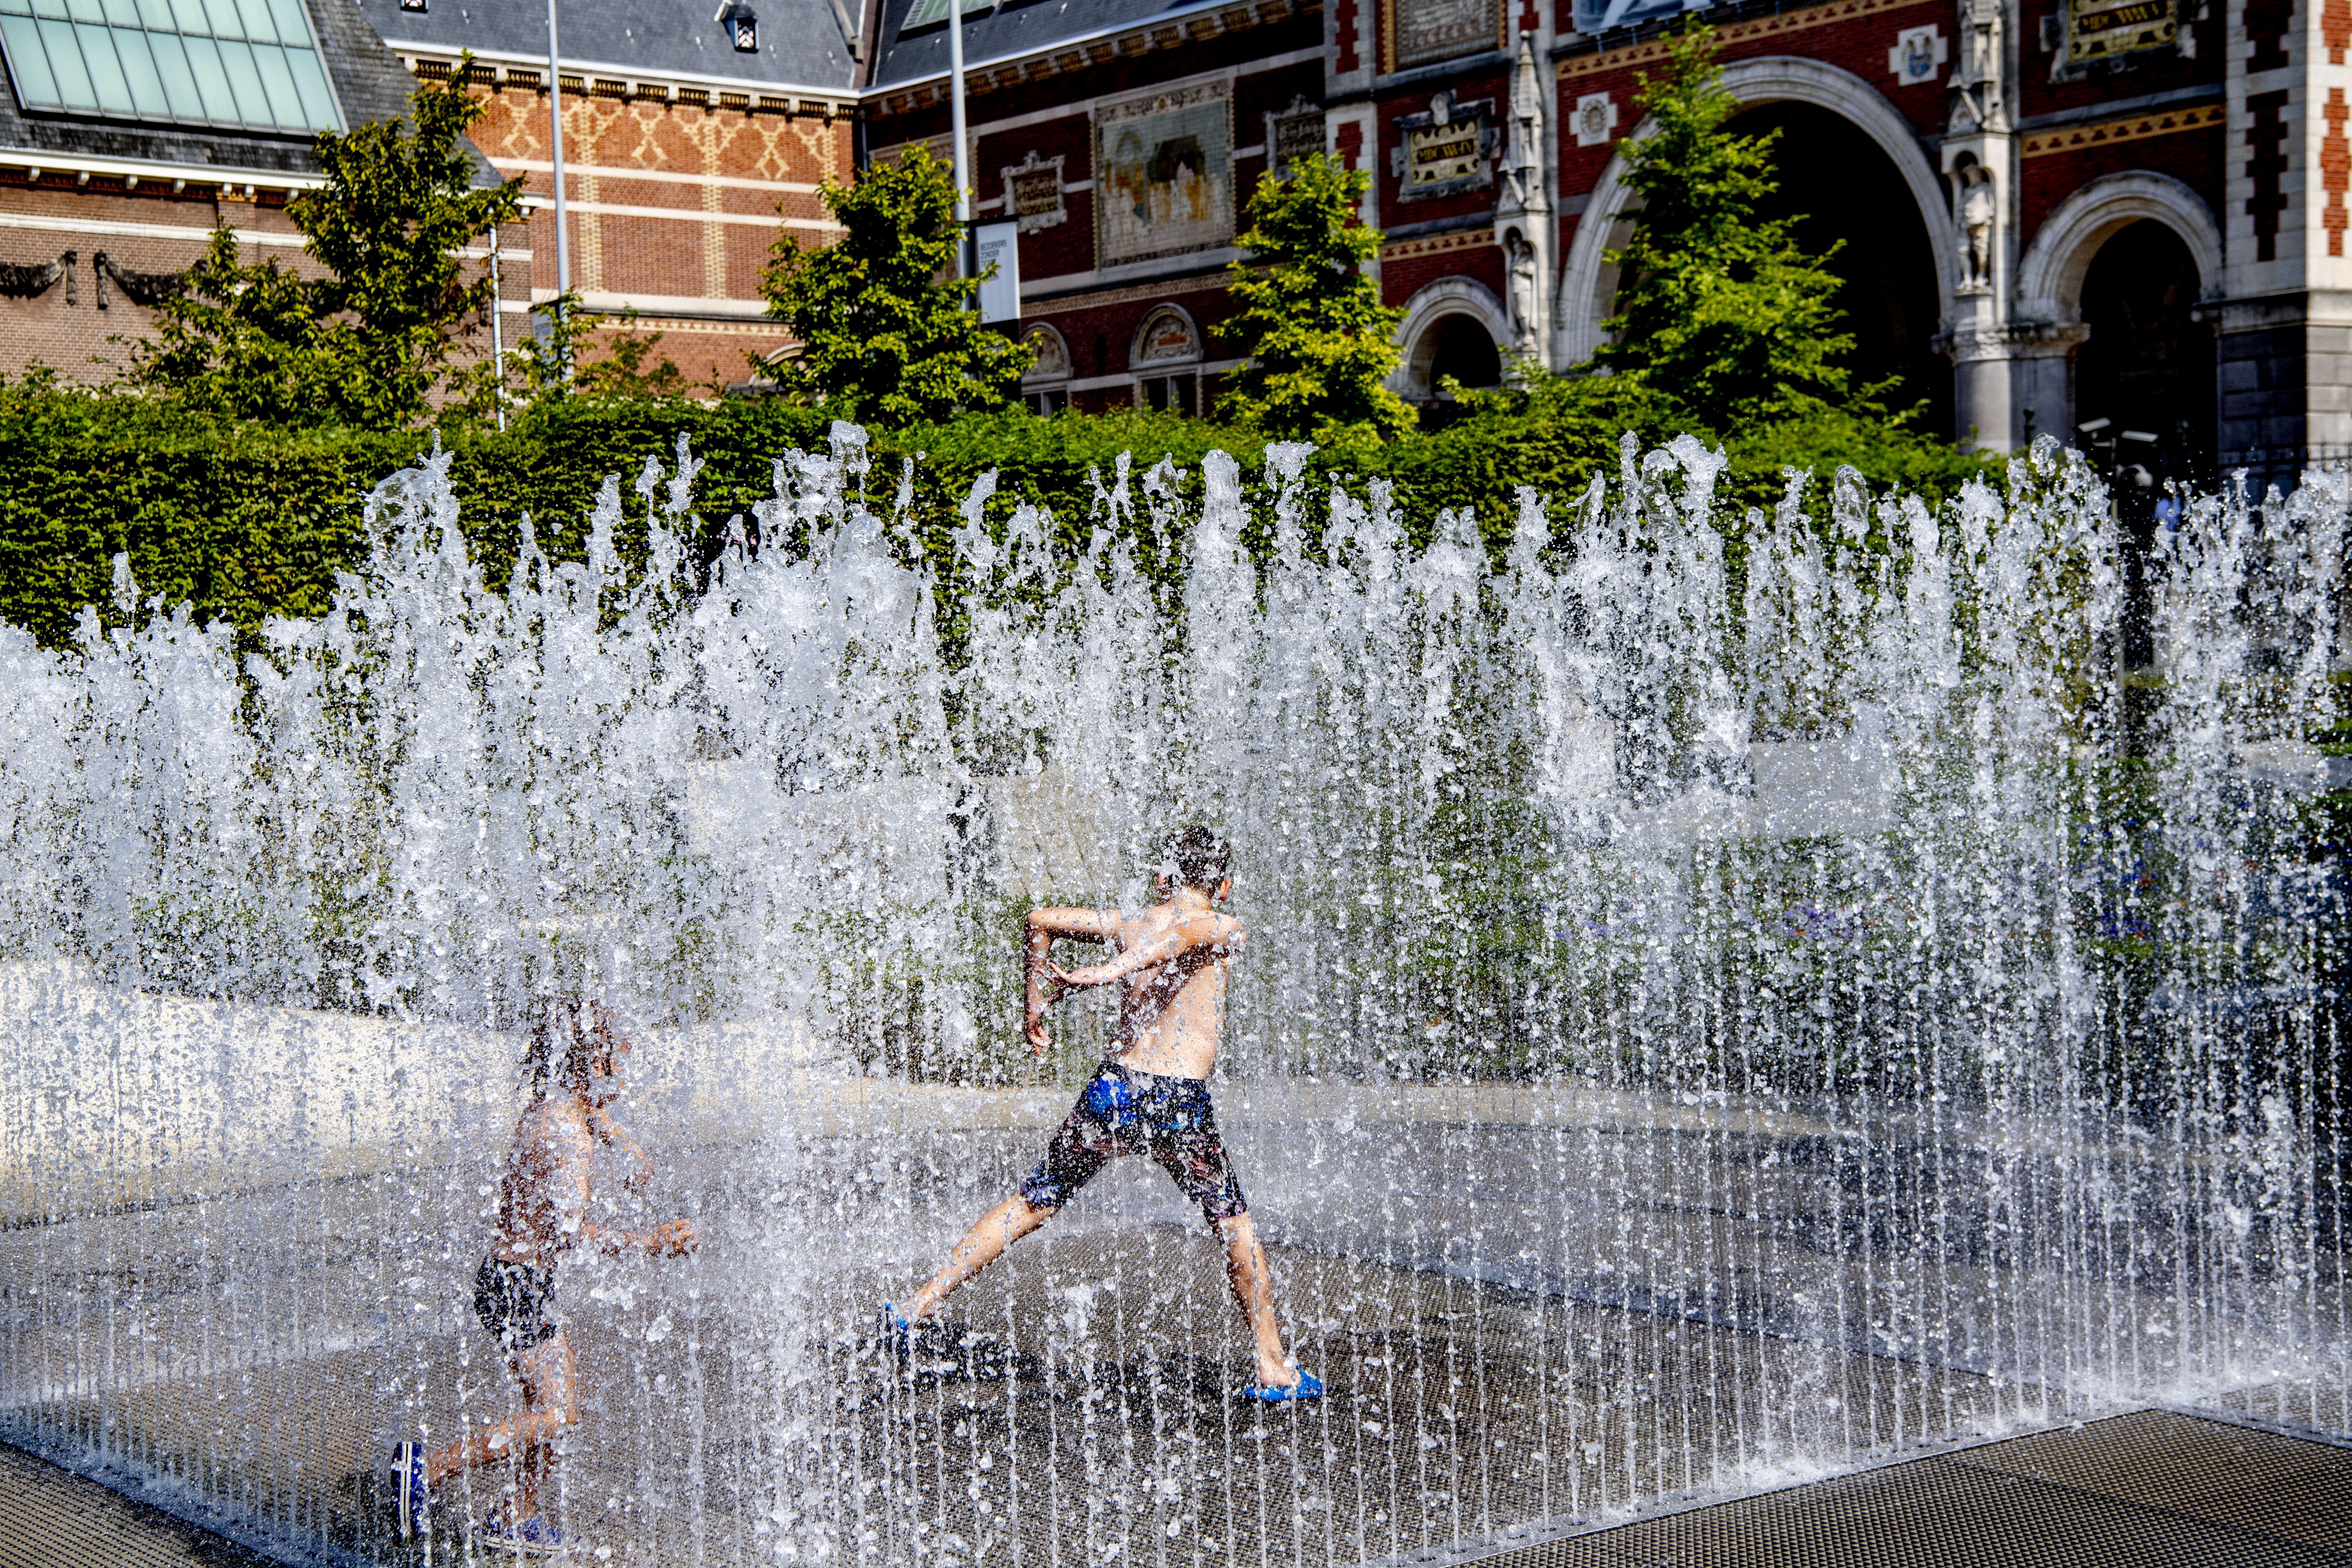 Europa sufre el día más fuerte de la ola de calor: Temperaturas superan los 40 grados centígrados